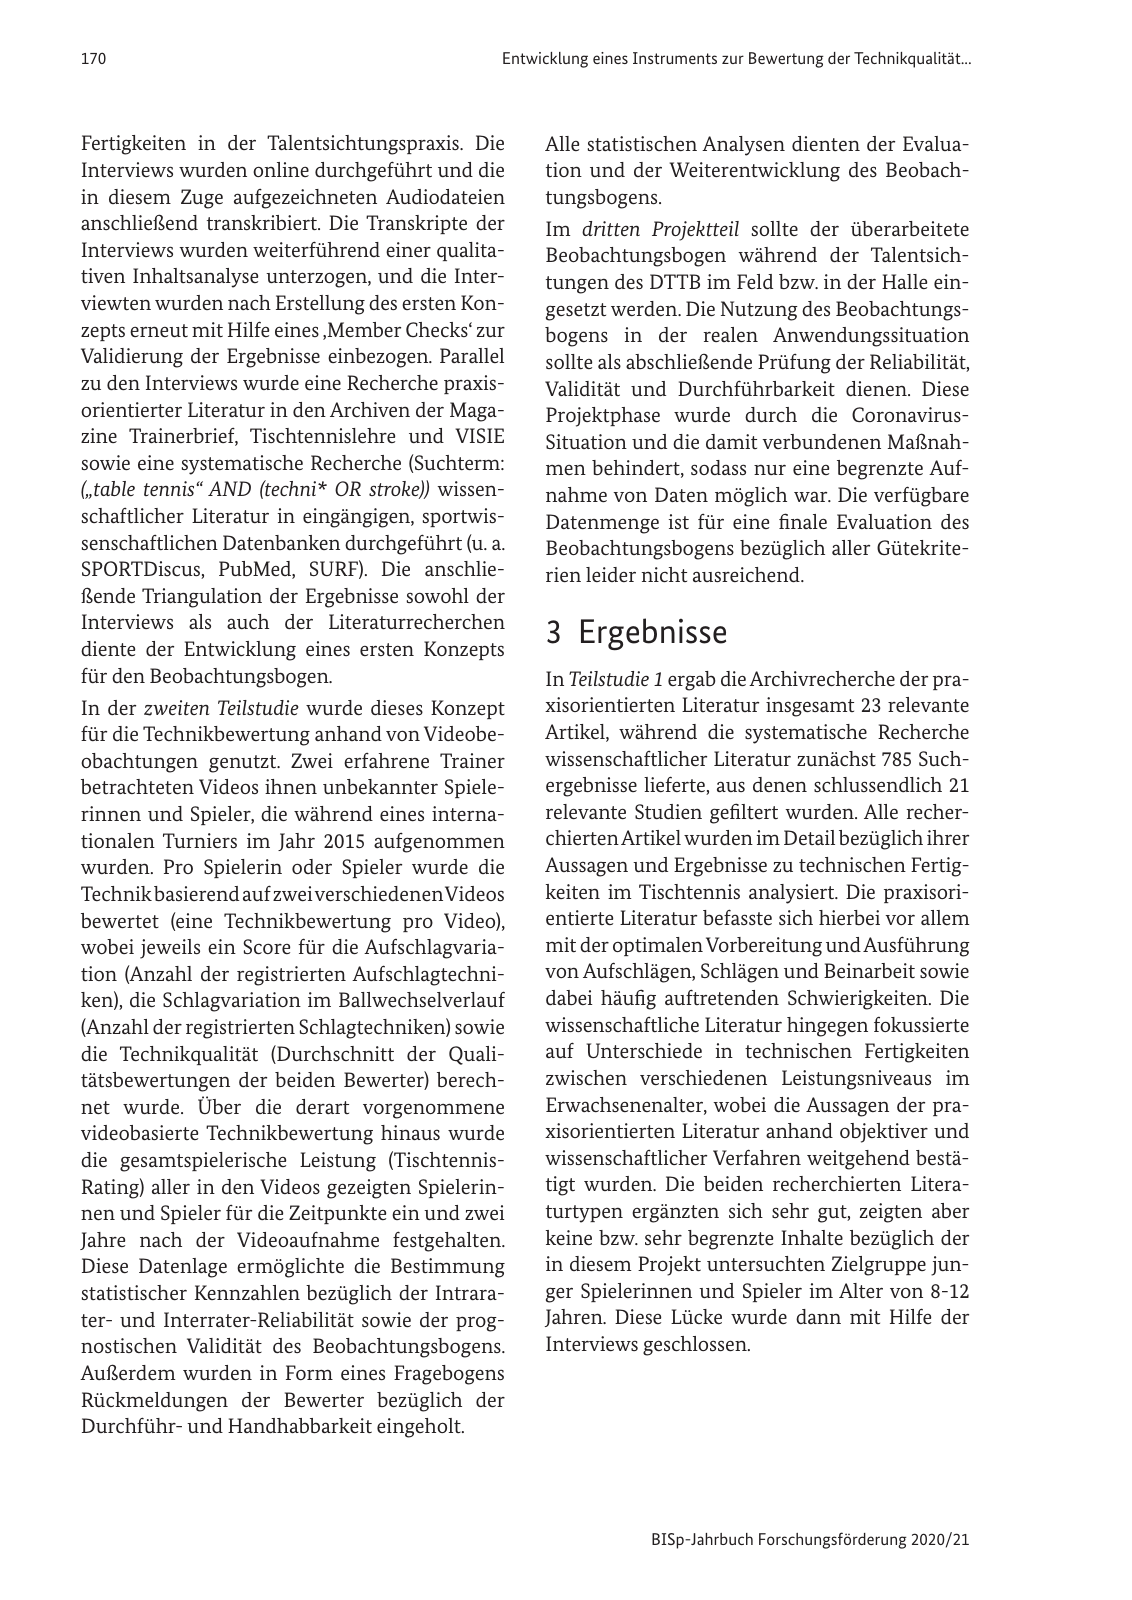 Vorschau BISp-Jahrbuch 2020/21 Seite 172